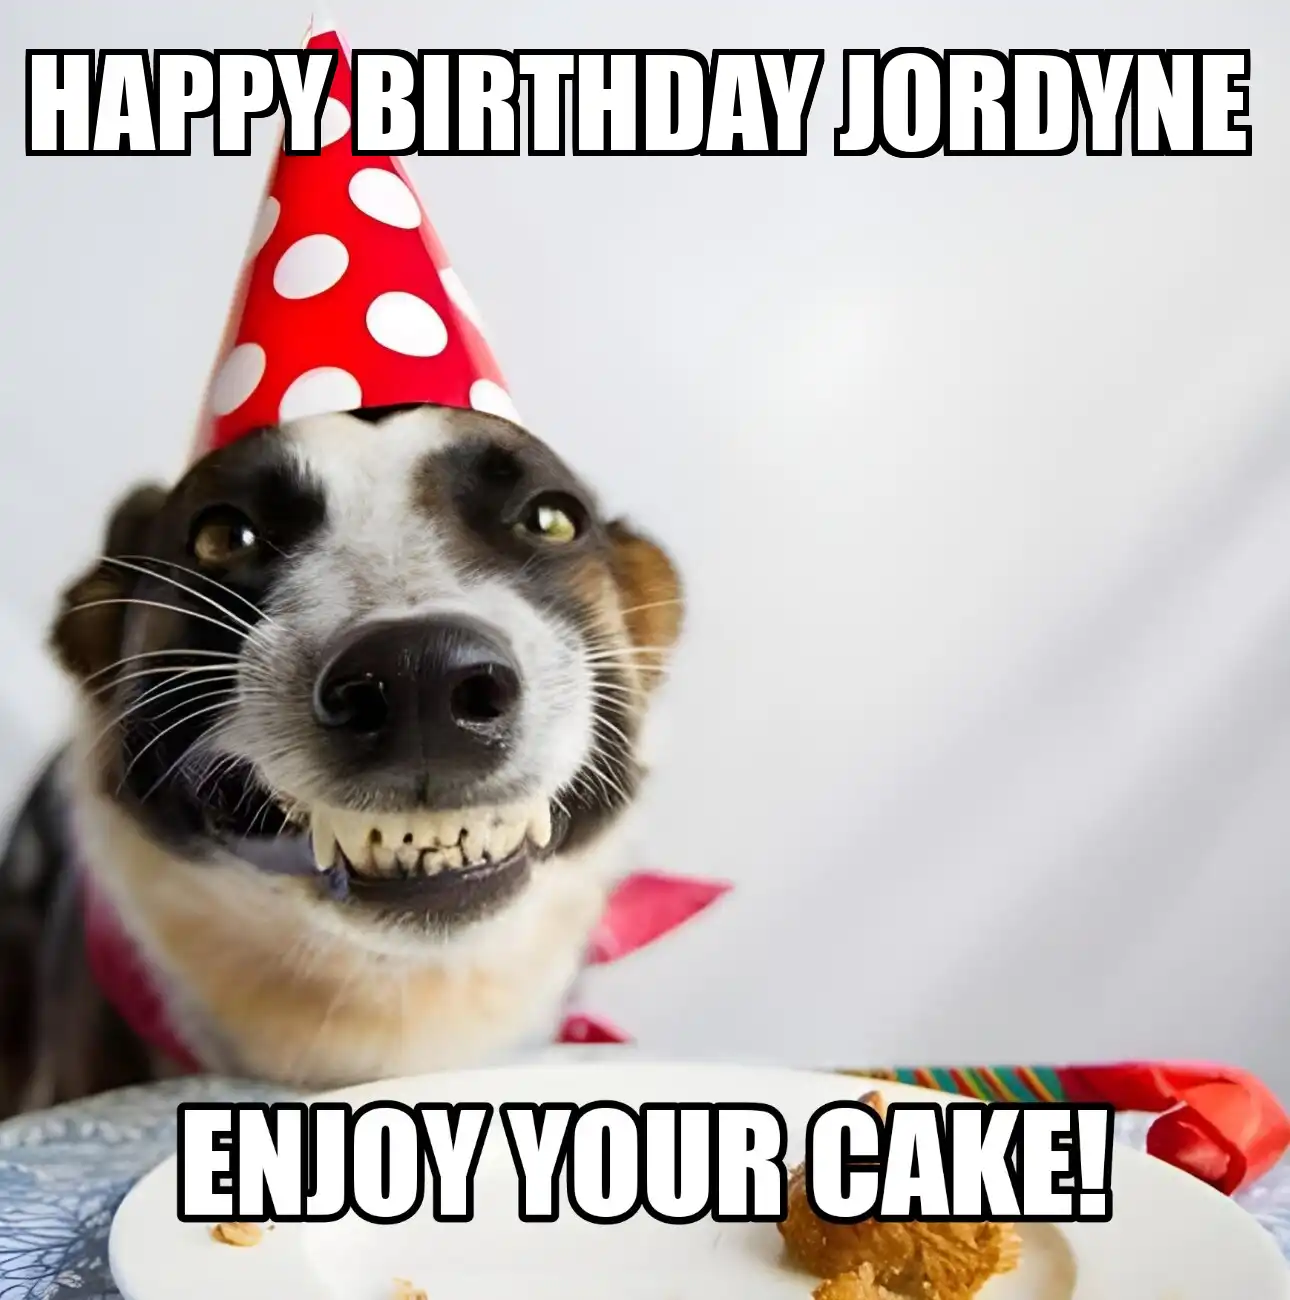 Happy Birthday Jordyne Enjoy Your Cake Dog Meme